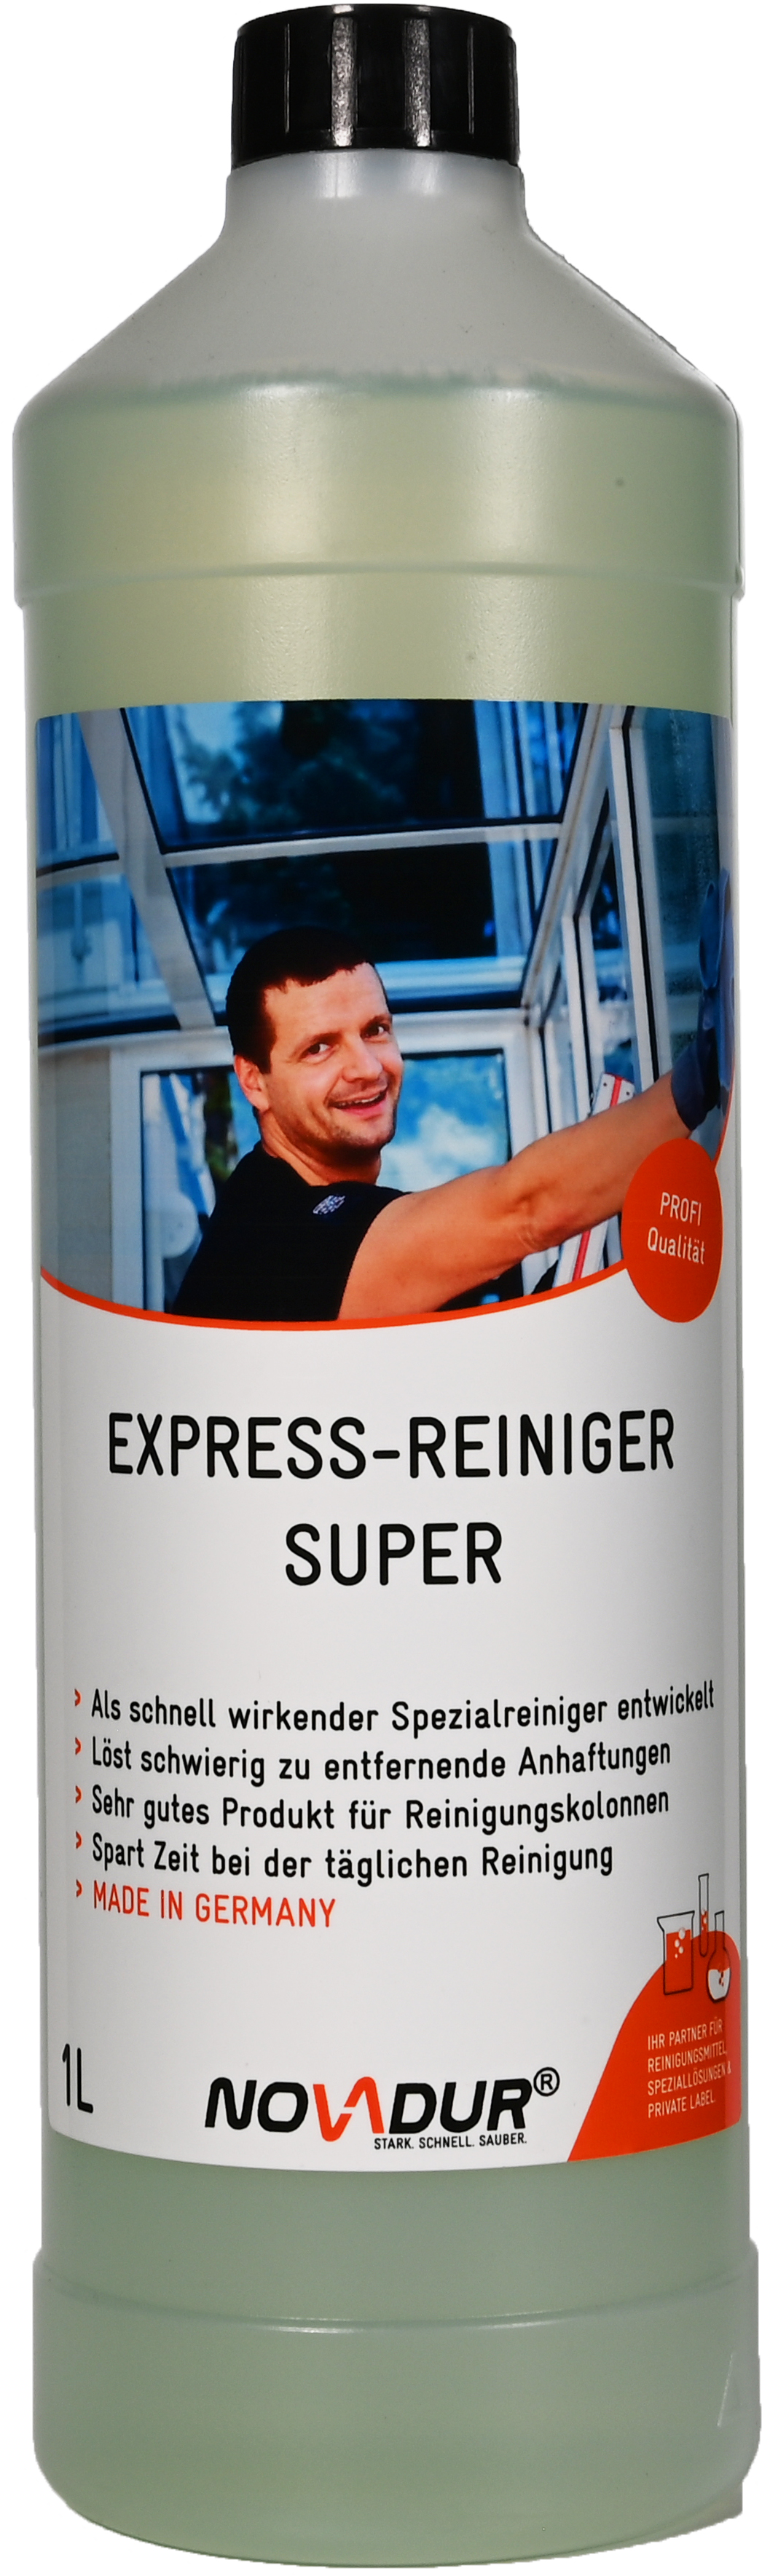 Express-Reiniger Super